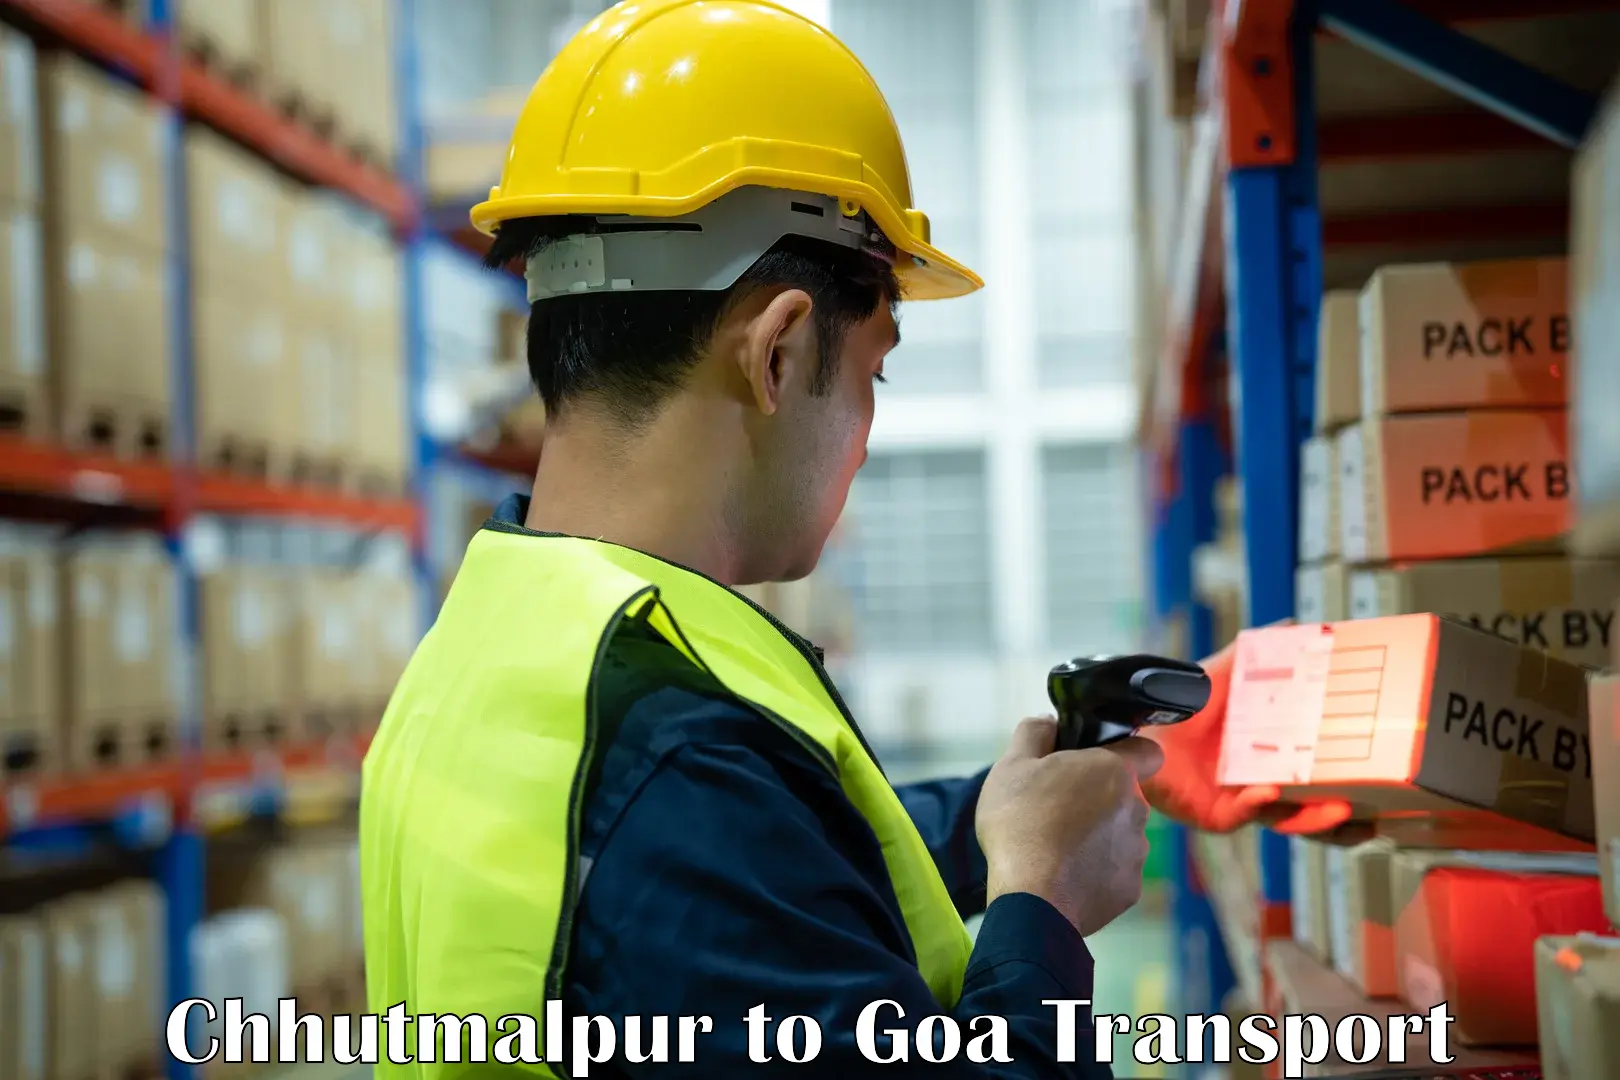 Bike shipping service Chhutmalpur to Goa